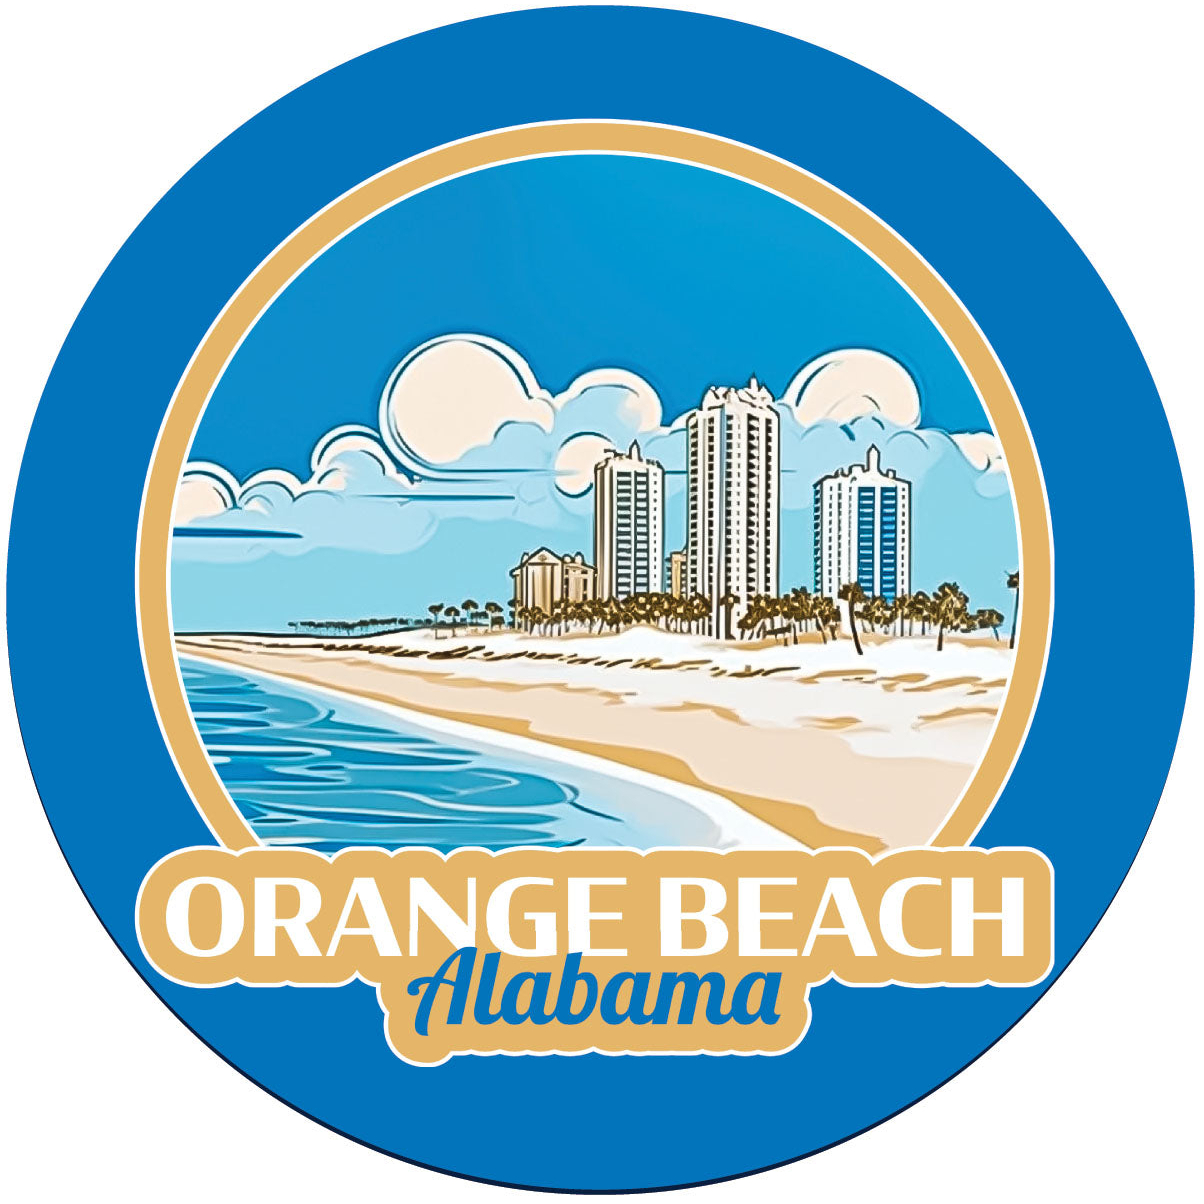 Orange Beach Alabama Design A Souvenir Round Vinyl Decal Sticker - 2-Inch